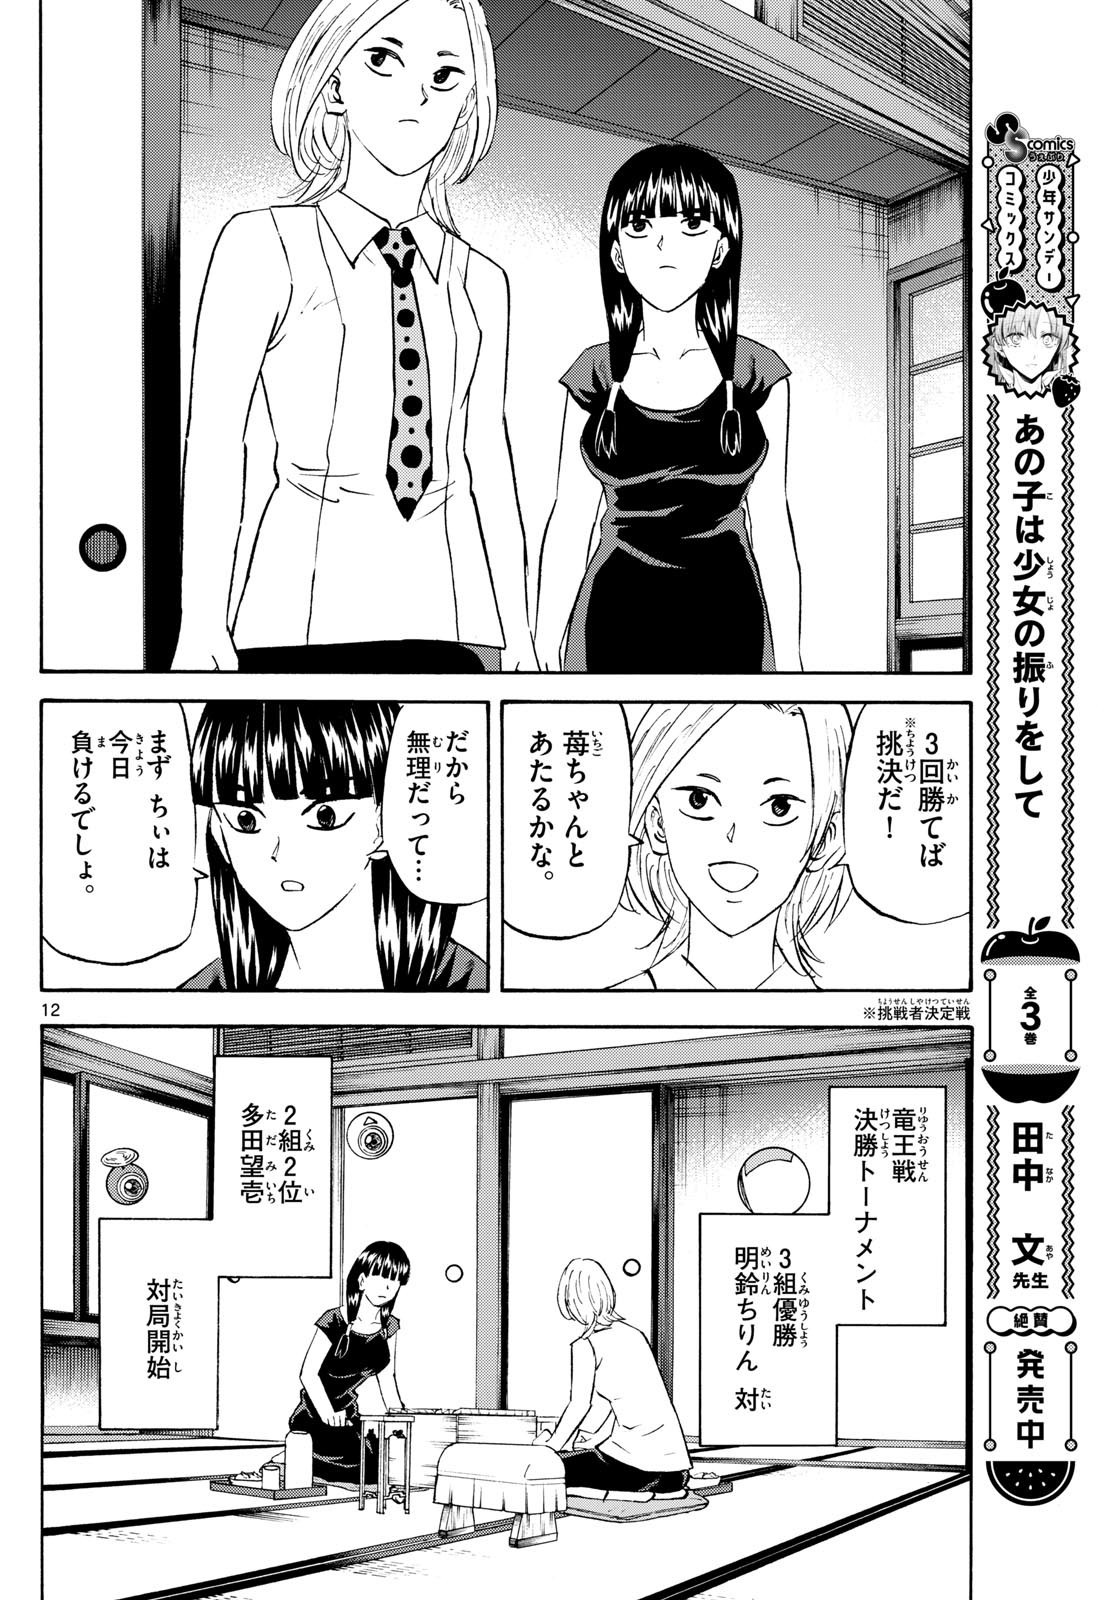 Tatsu to Ichigo - Chapter 199 - Page 12